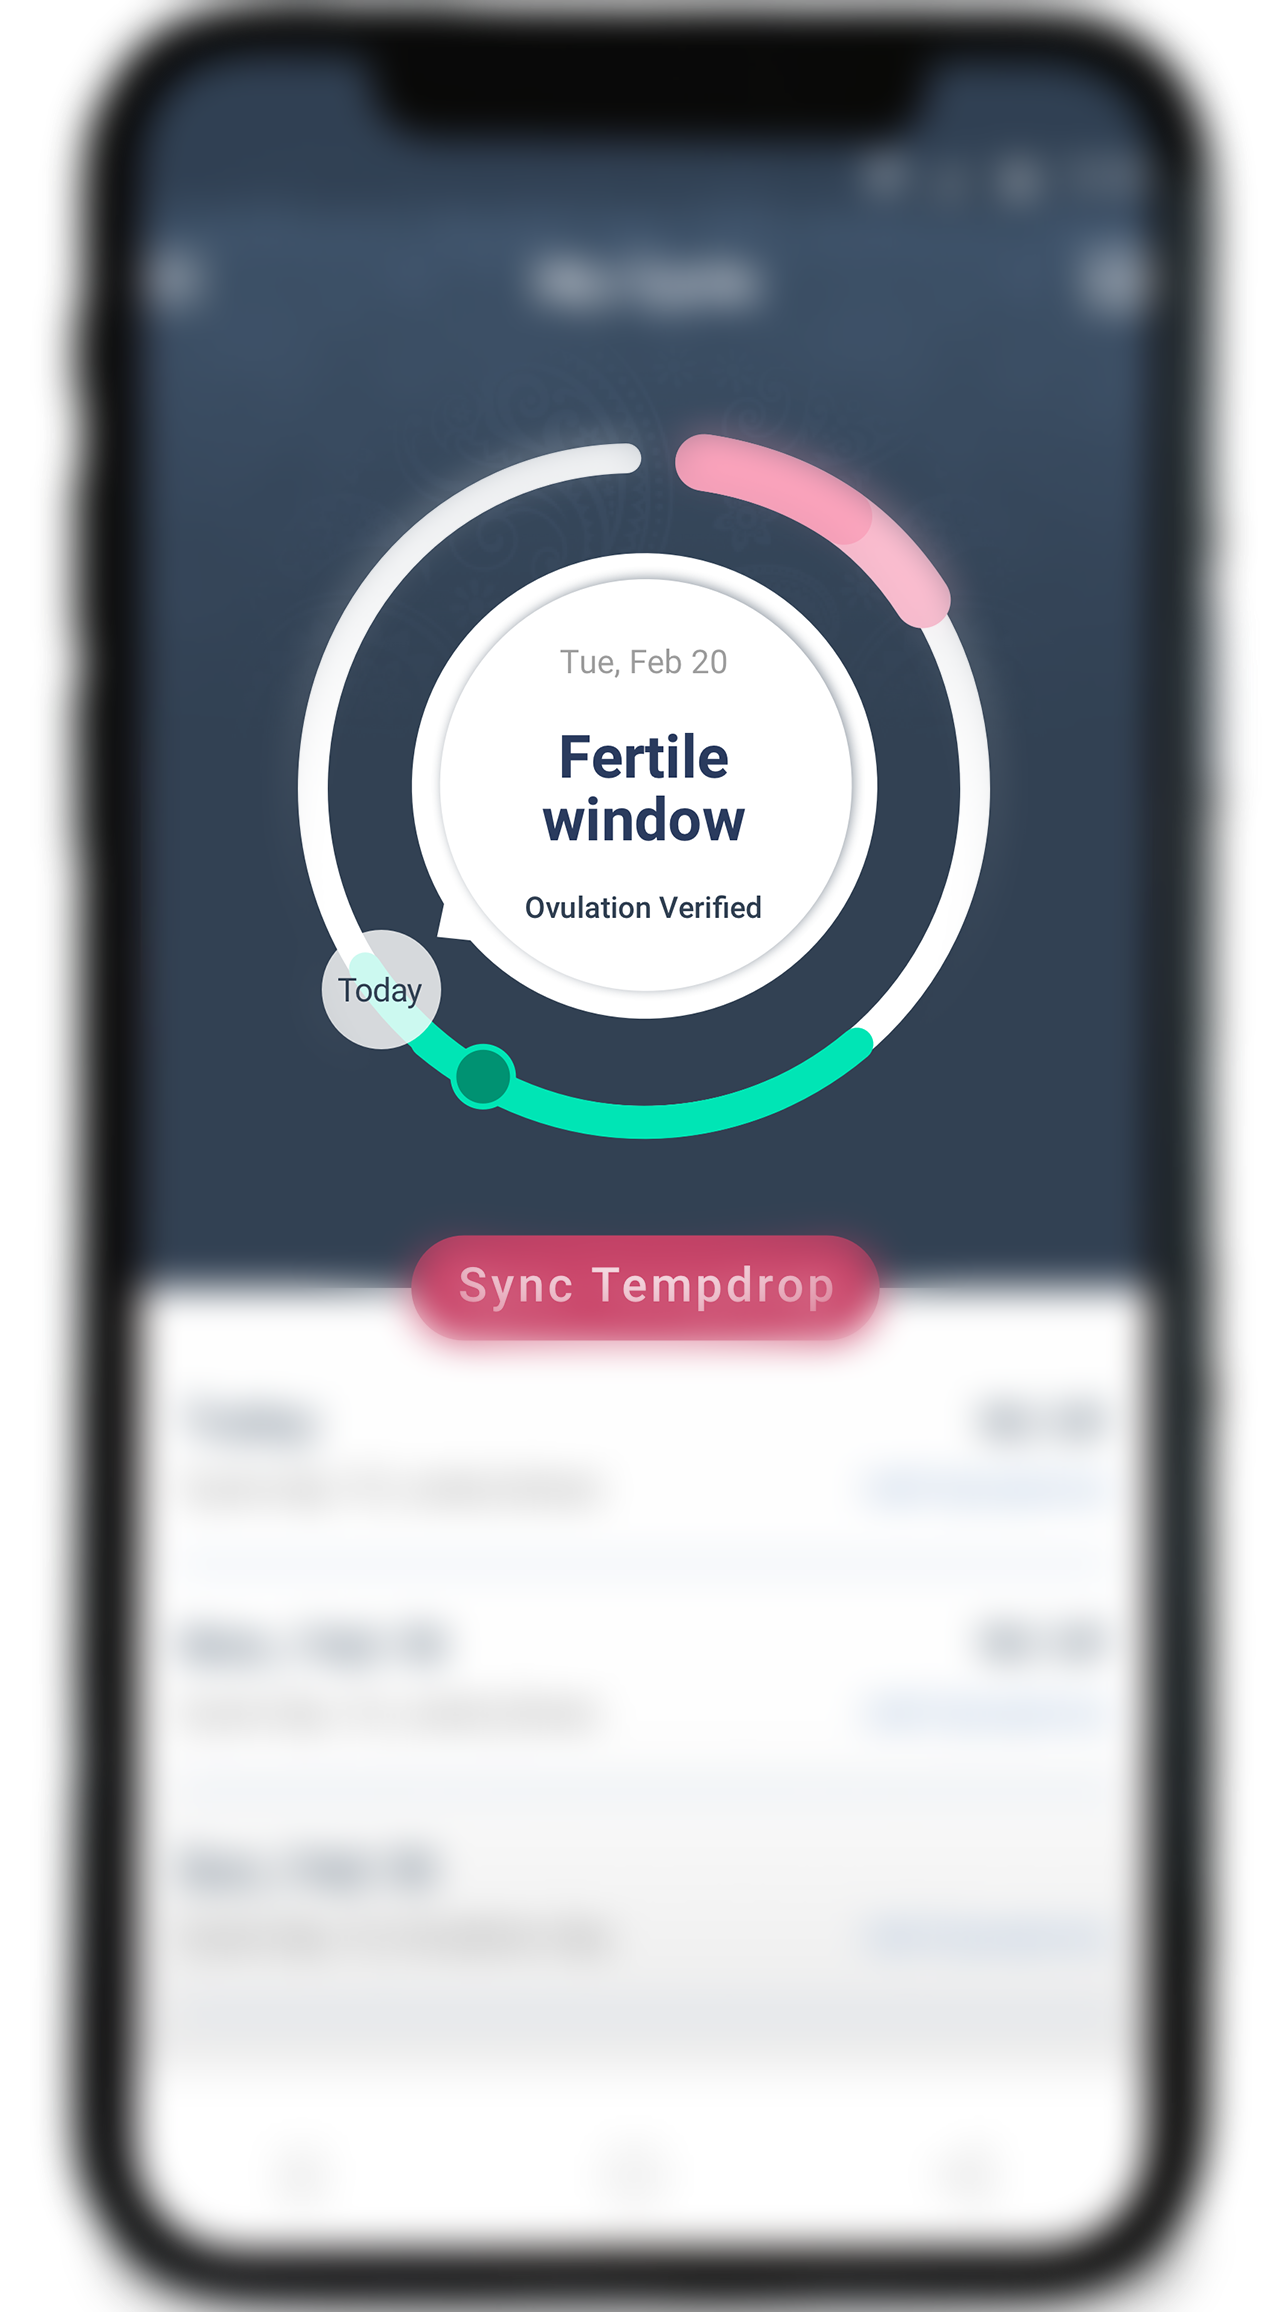 Fertile window screen on Tempdrop app